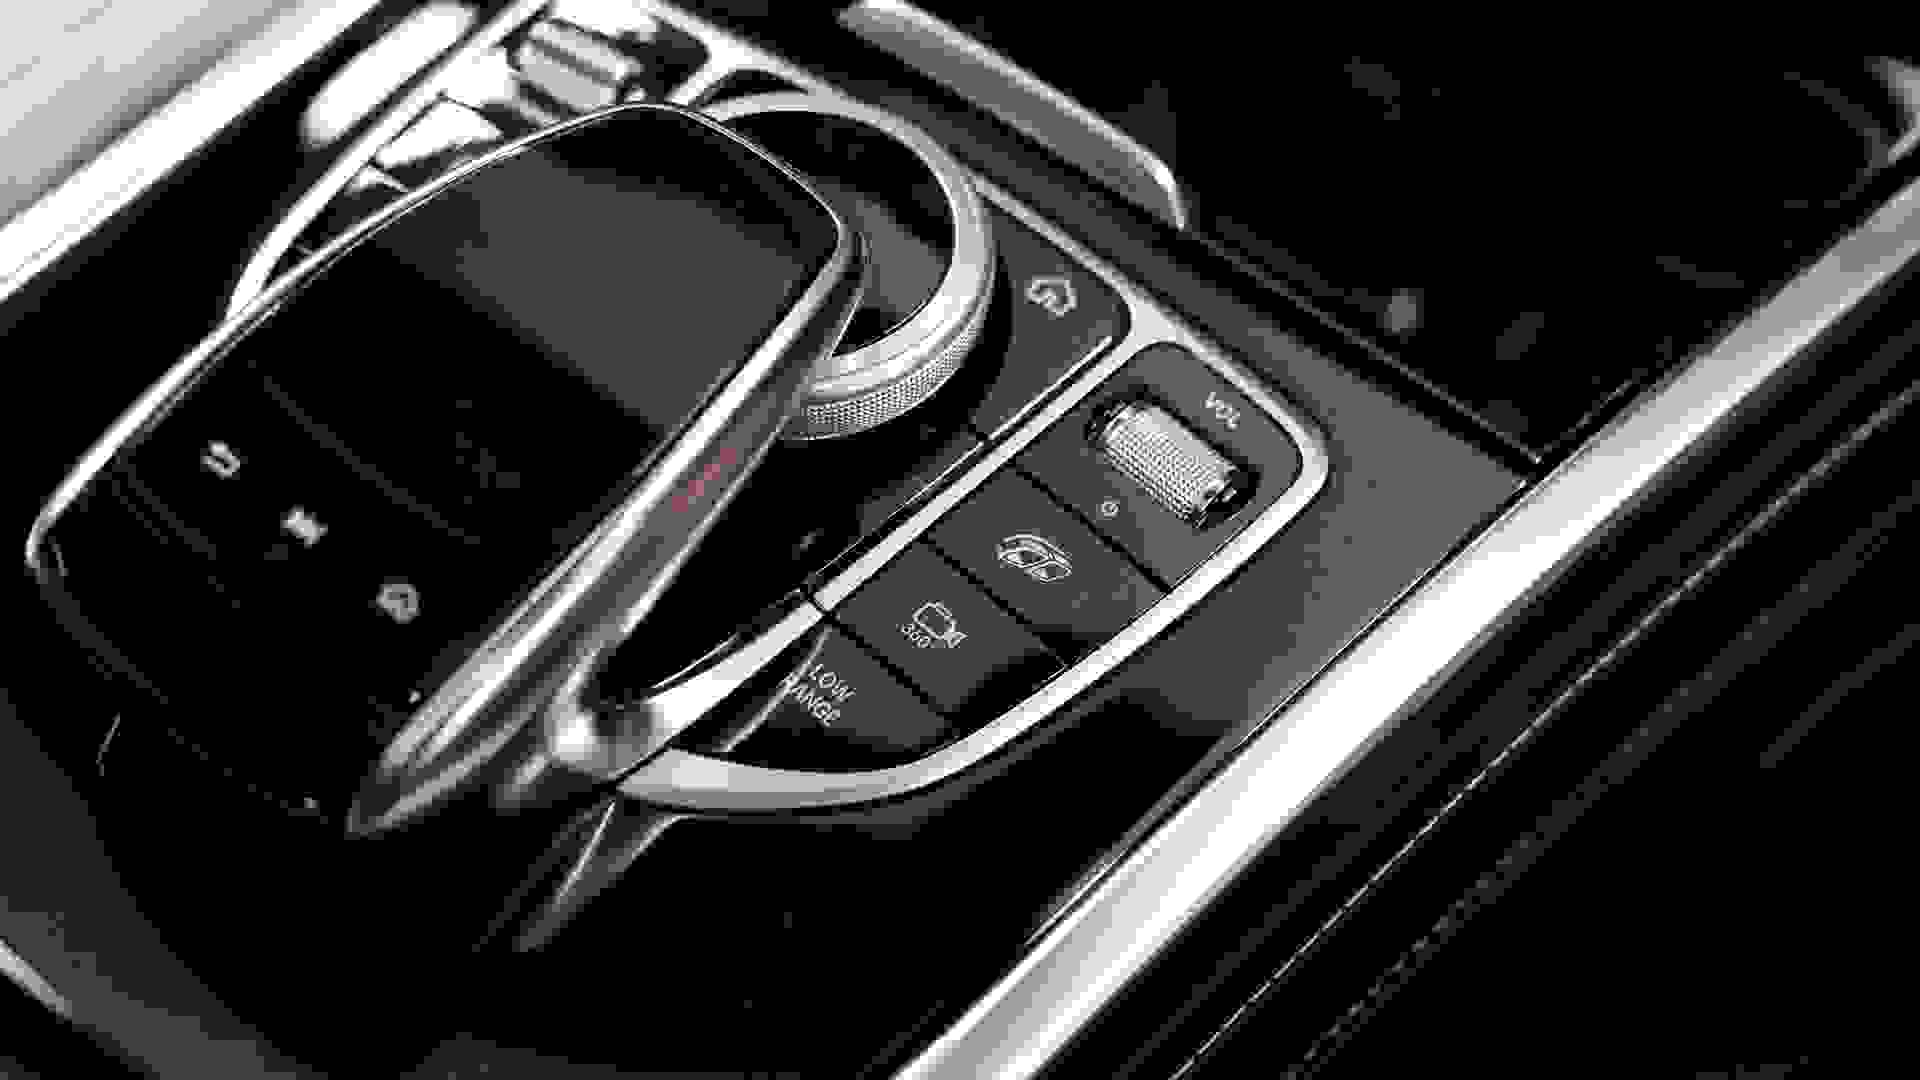 Mercedes-Benz G-Class Photo 2889945e-7dbb-48ab-af33-a34c5d3fd5b2.jpg